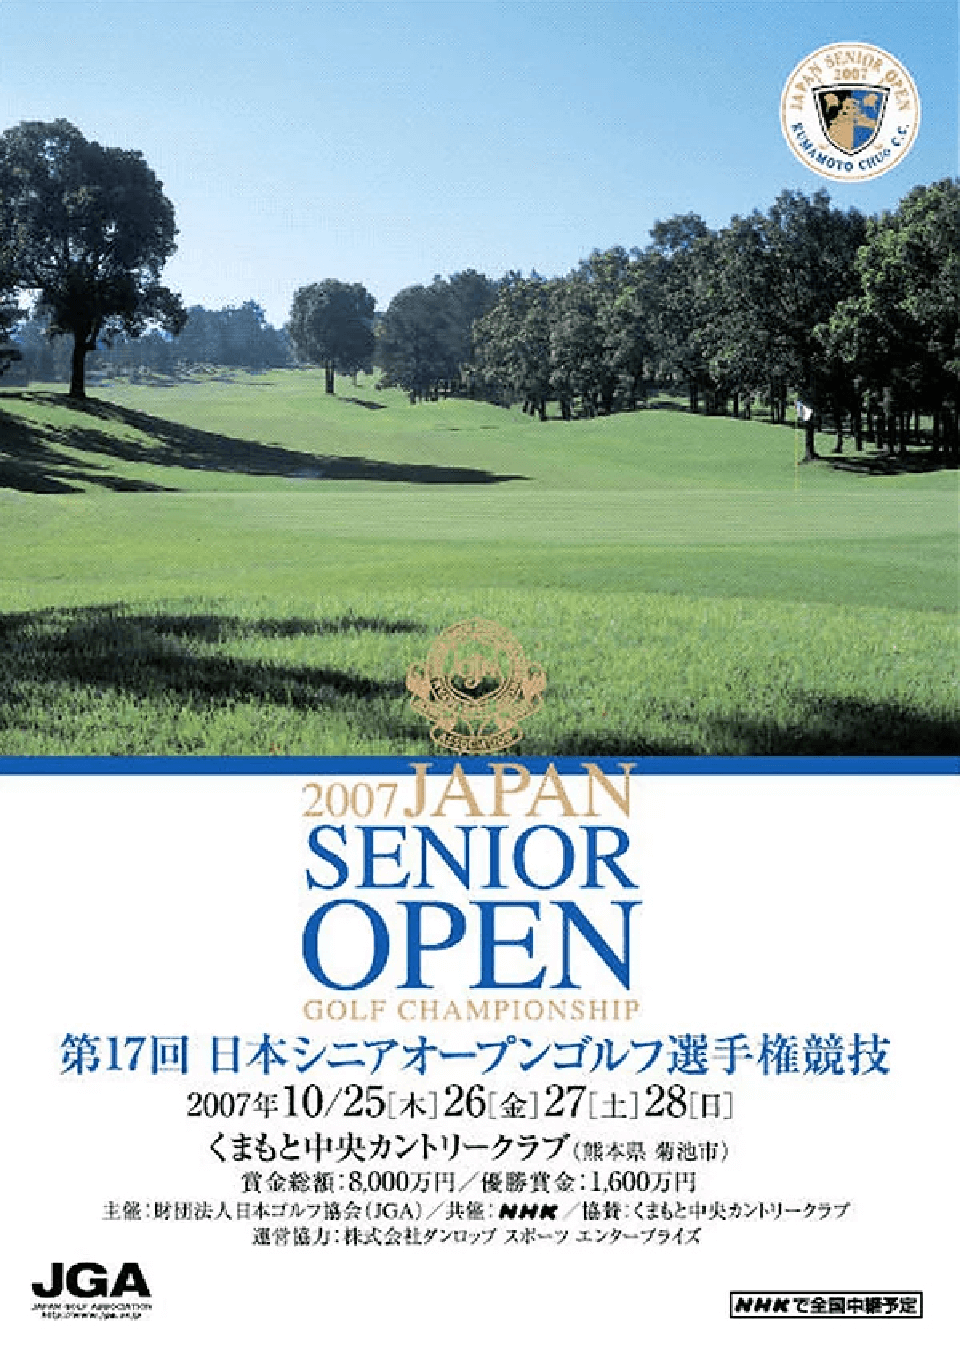 日本シニアオープンゴルフ選手権競技・イメージ